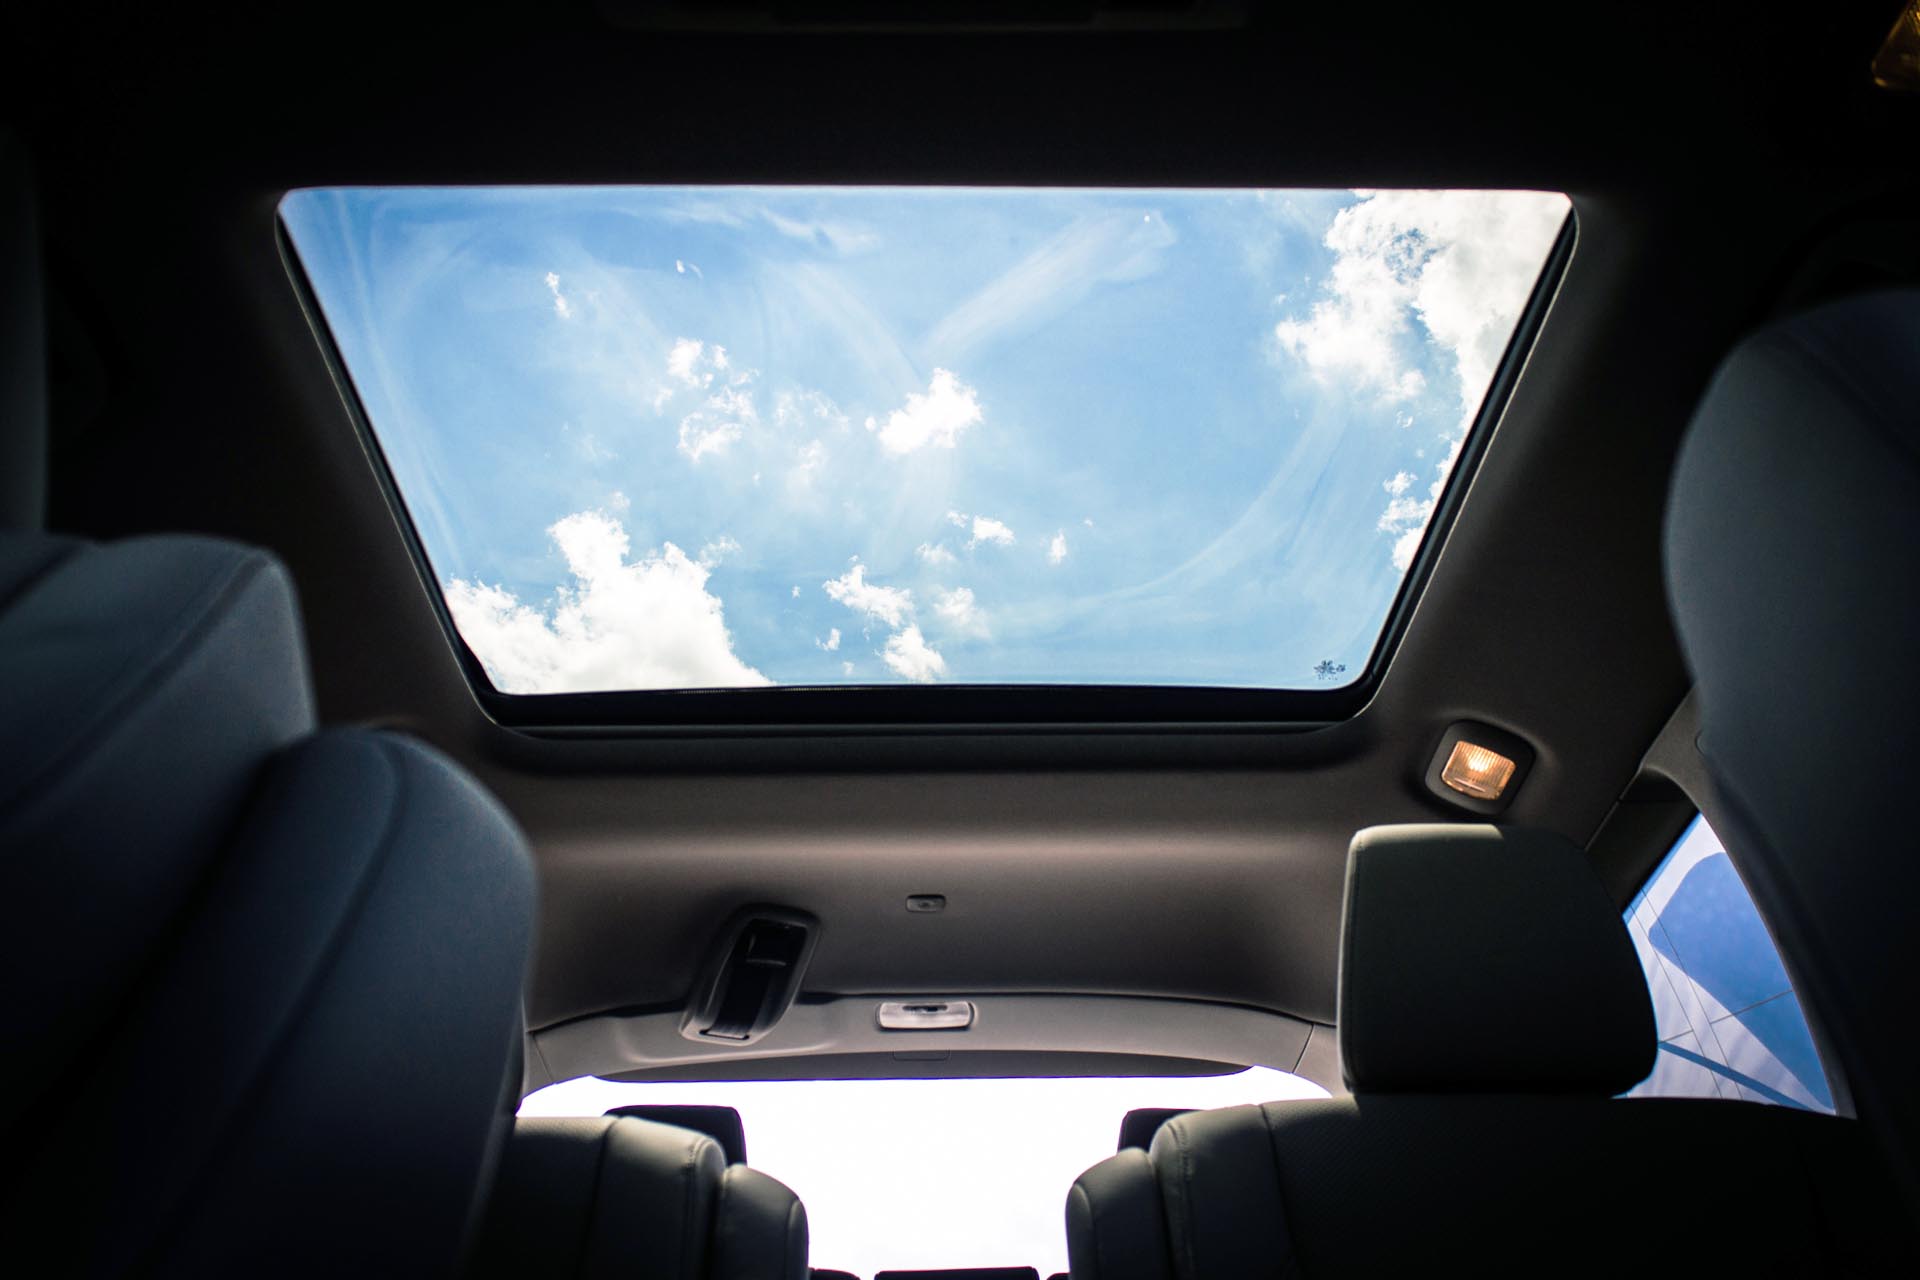 Honda Pilot With Panoramic Sunroof